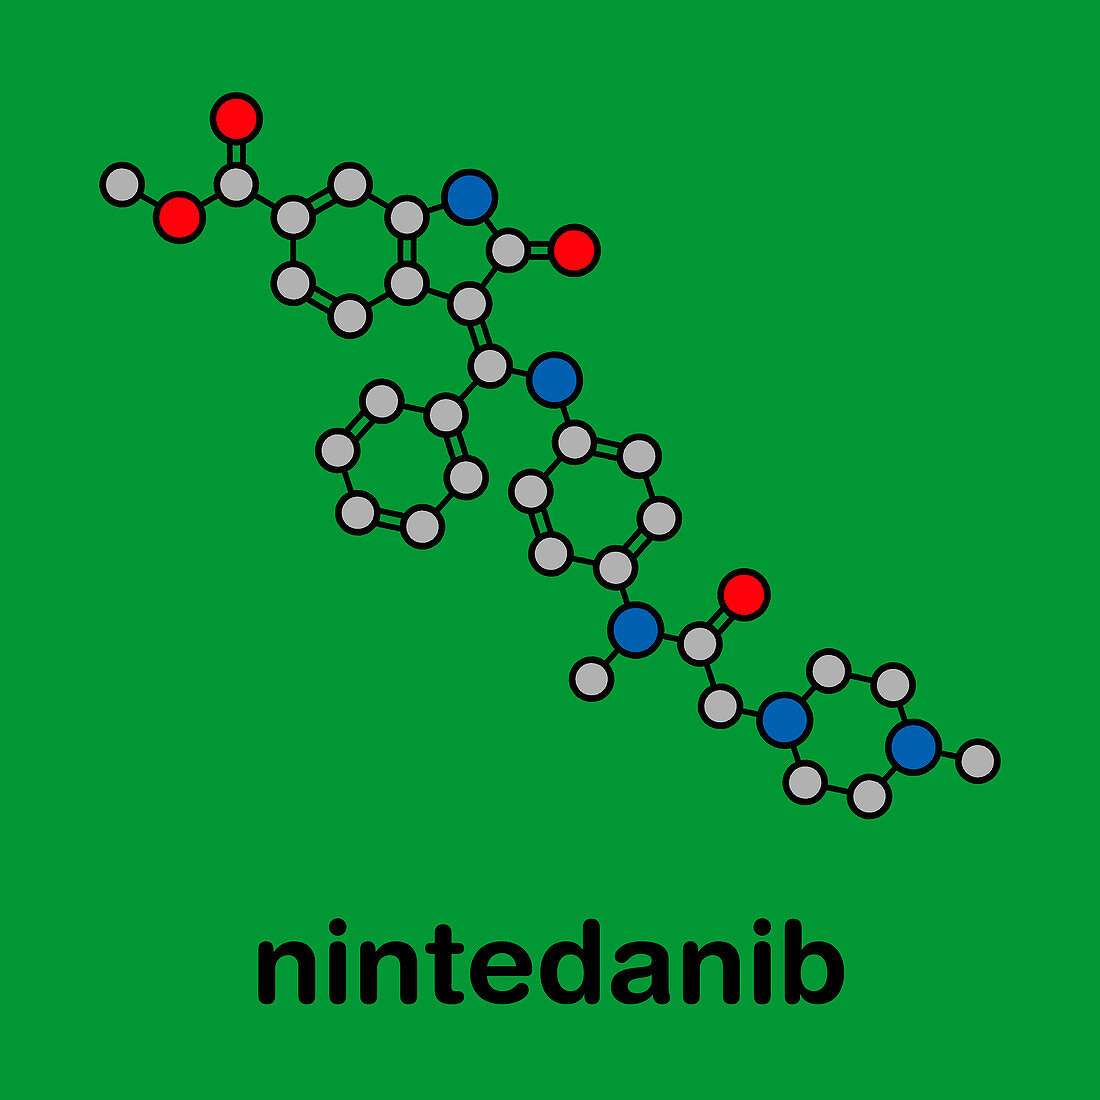 Nintedanib cancer drug, molecular model